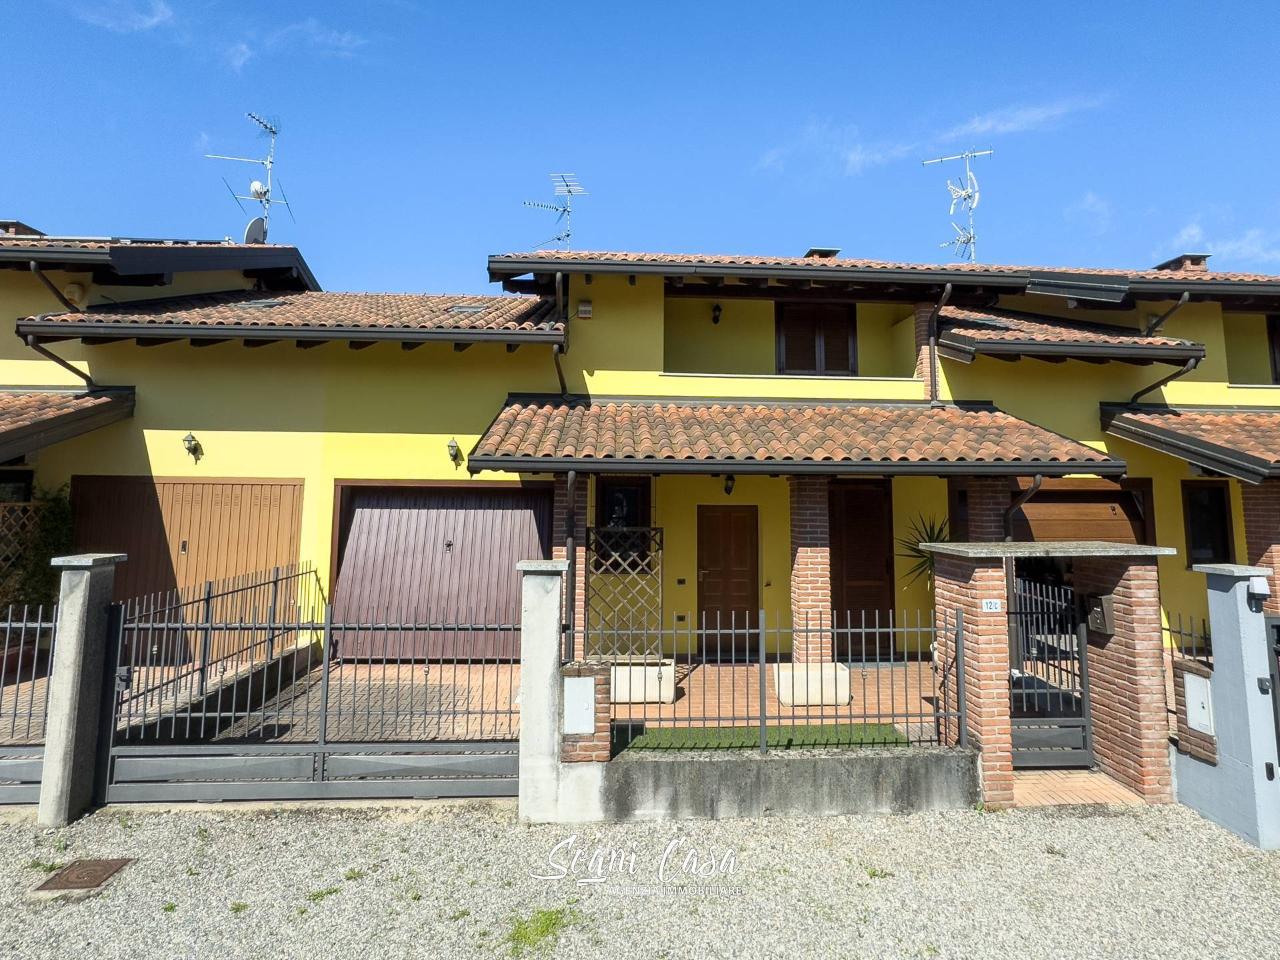 Appartamento in vendita a Marano Ticino